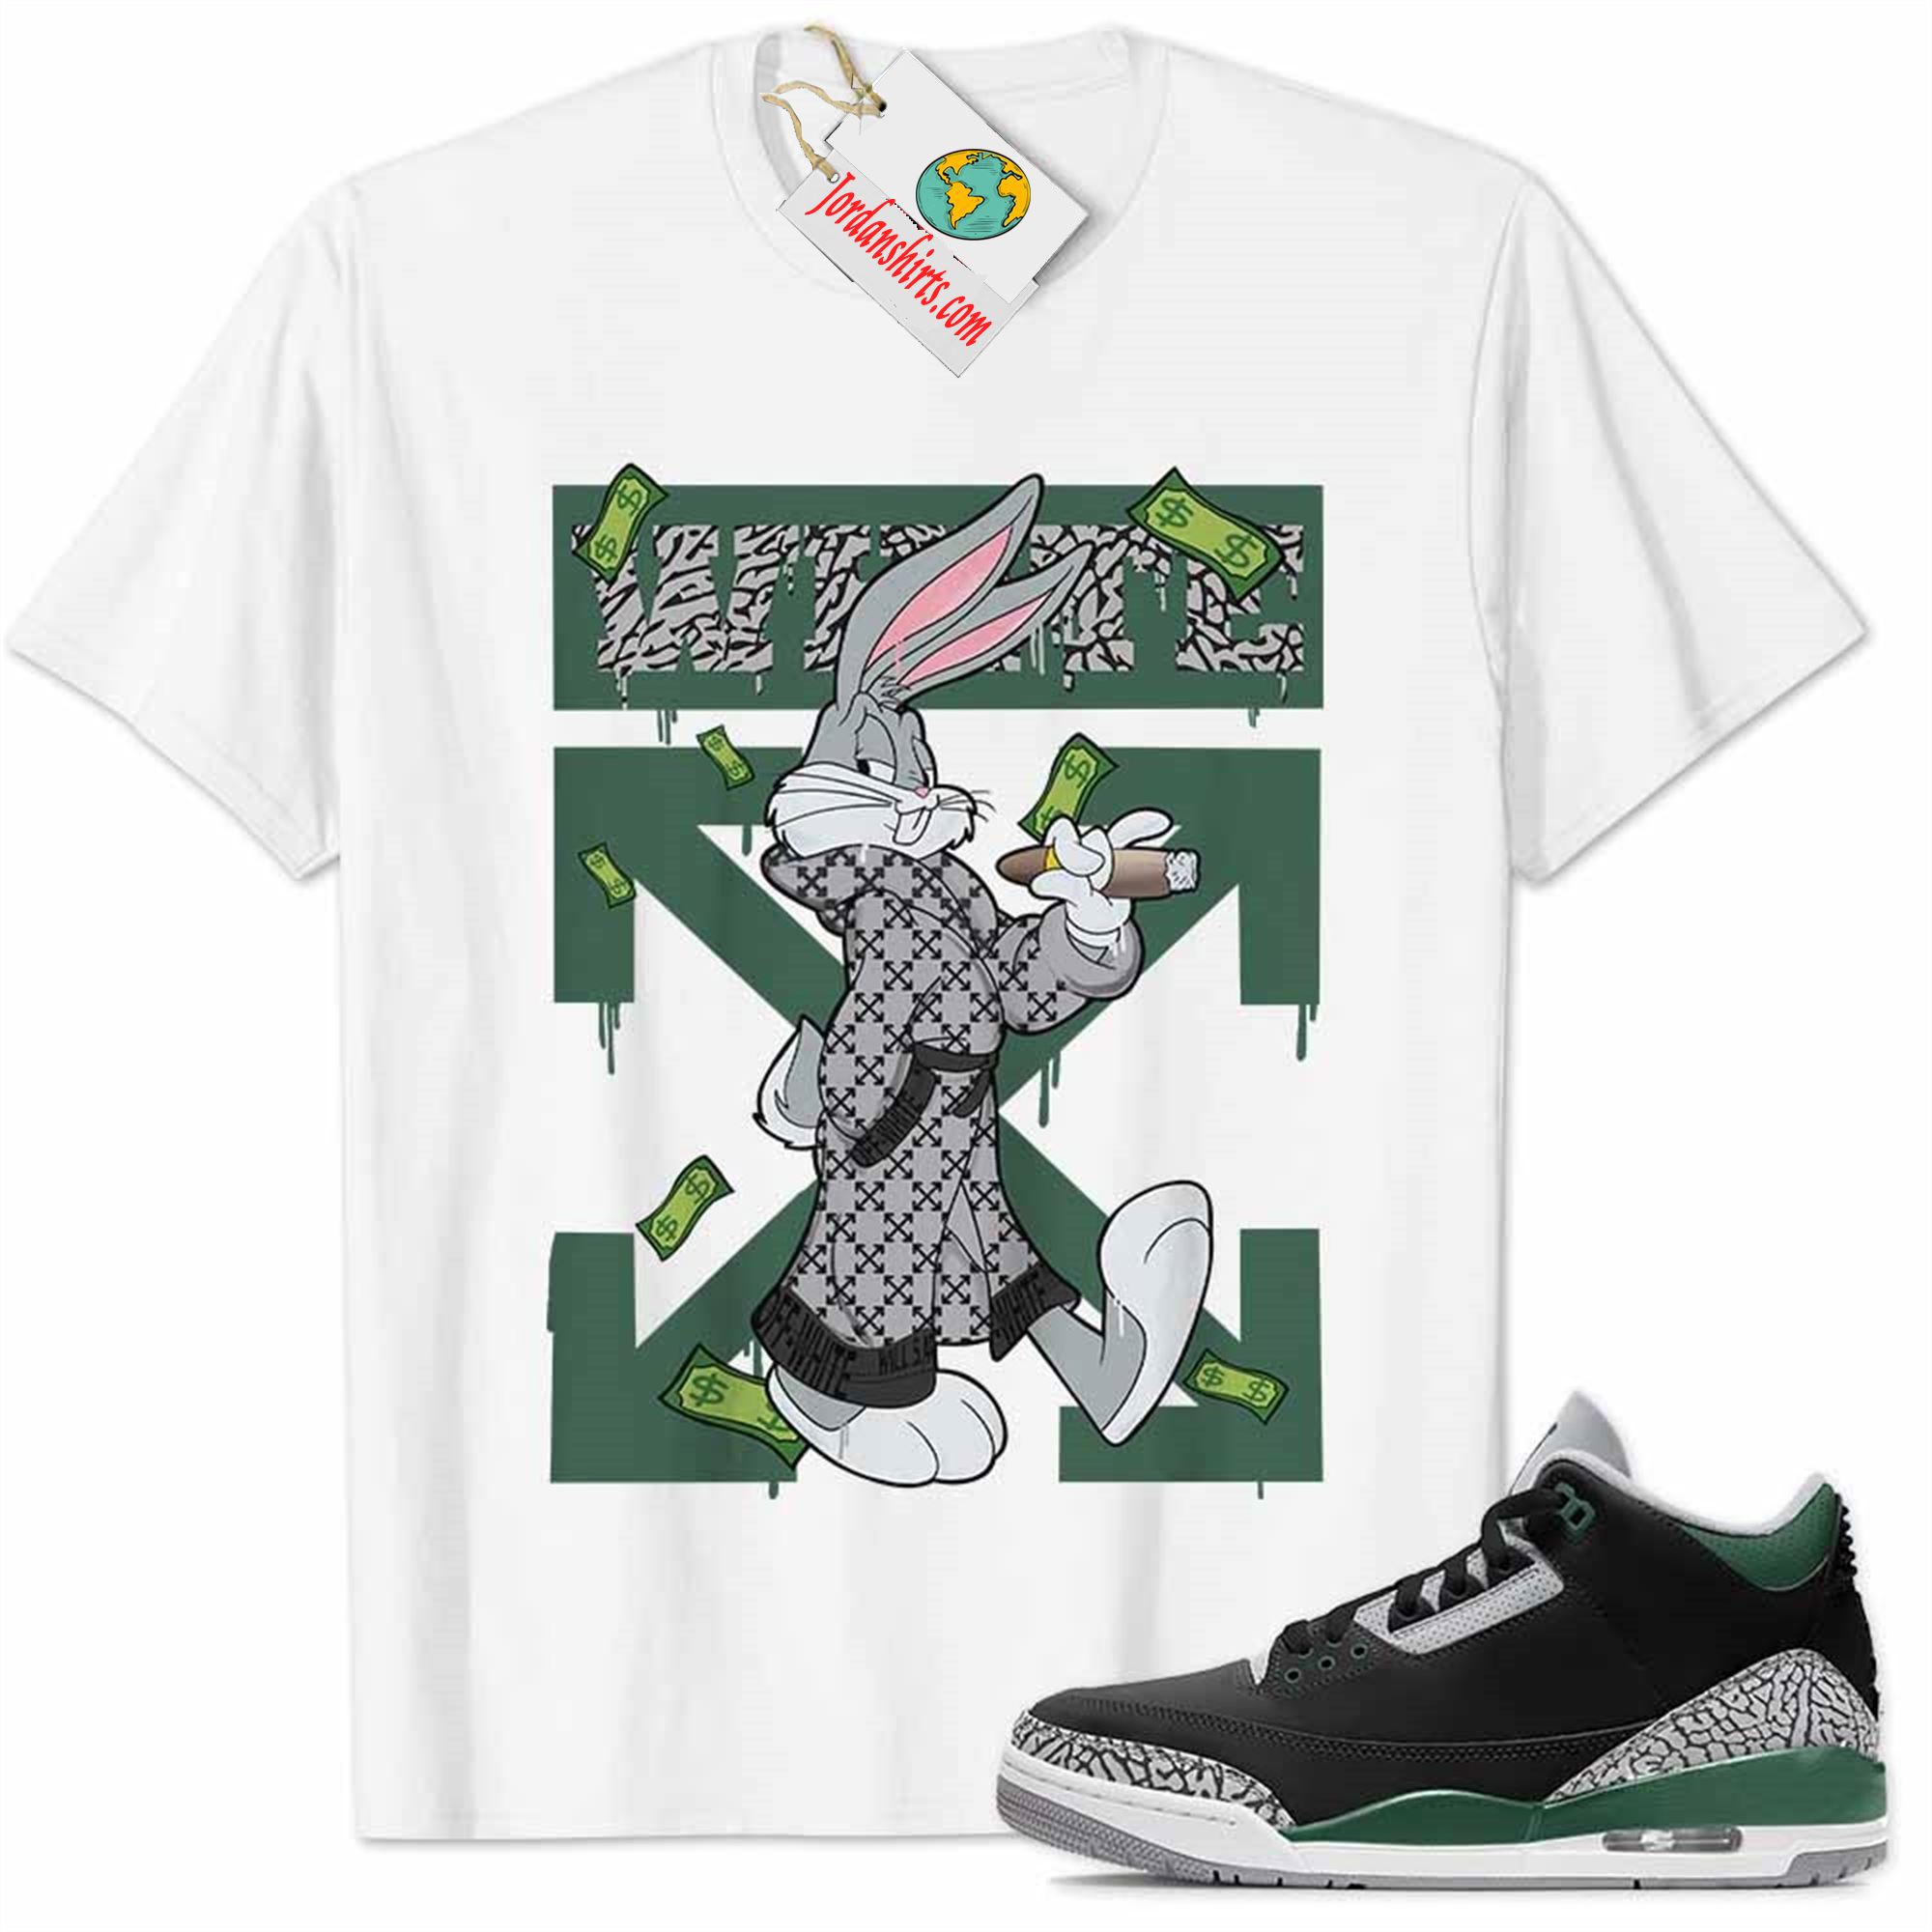 Jordan 3 Shirt, Jordan 3 Pine Green Shirt Bug Bunny Smokes Weed Money Falling White Size Up To 5xl